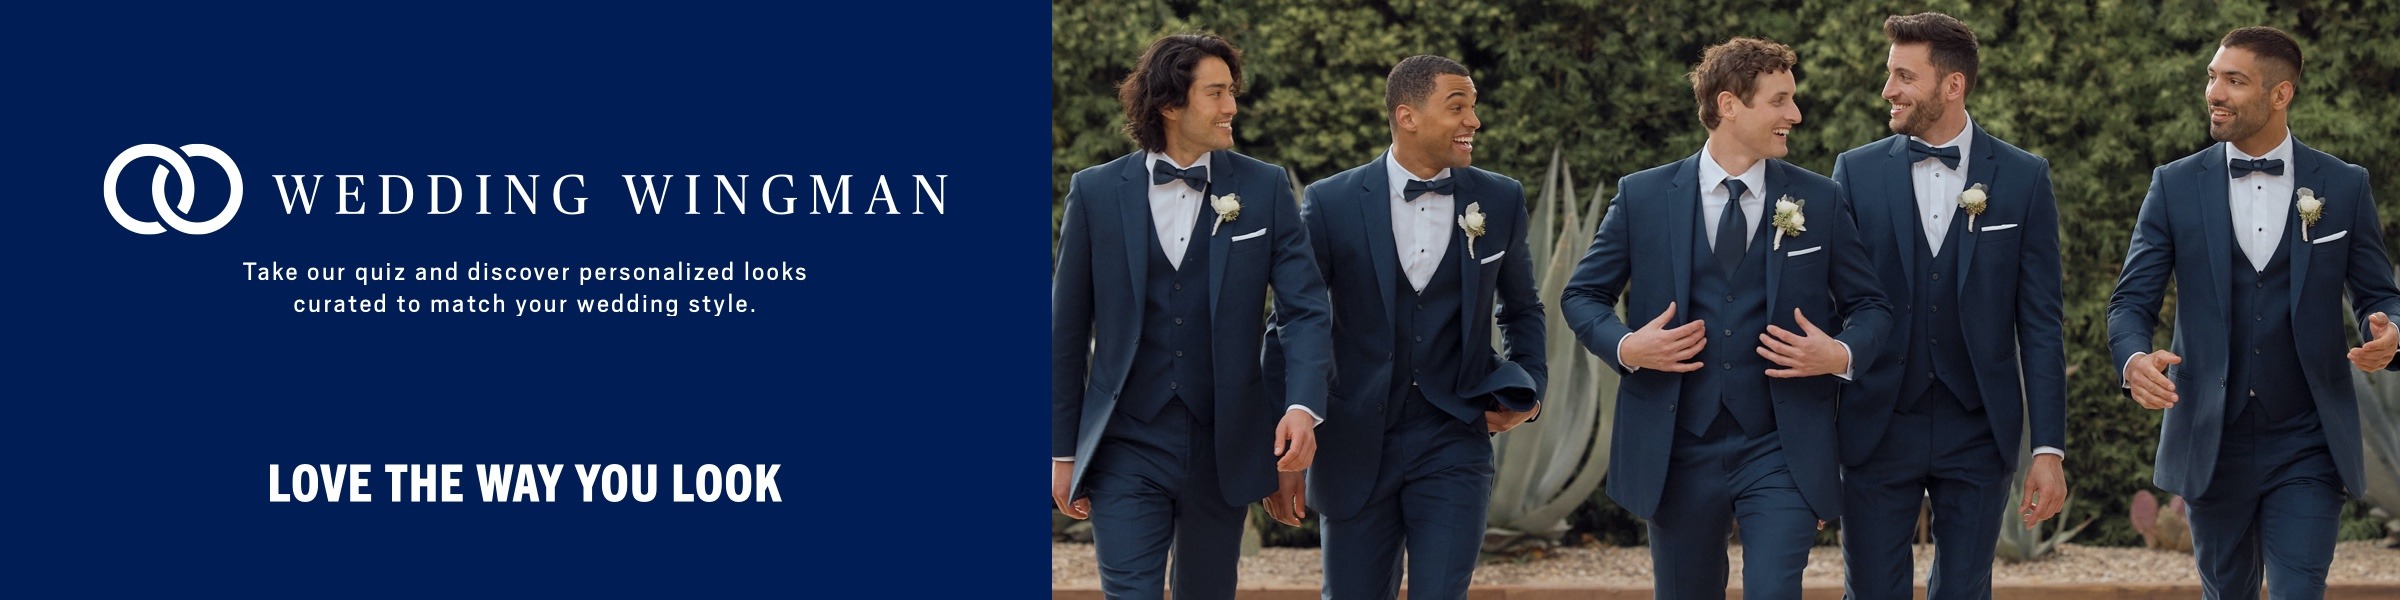 navy suit vest - Google Search | Navy blue suit wedding, Blue wedding suit  groom, Blue suit wedding